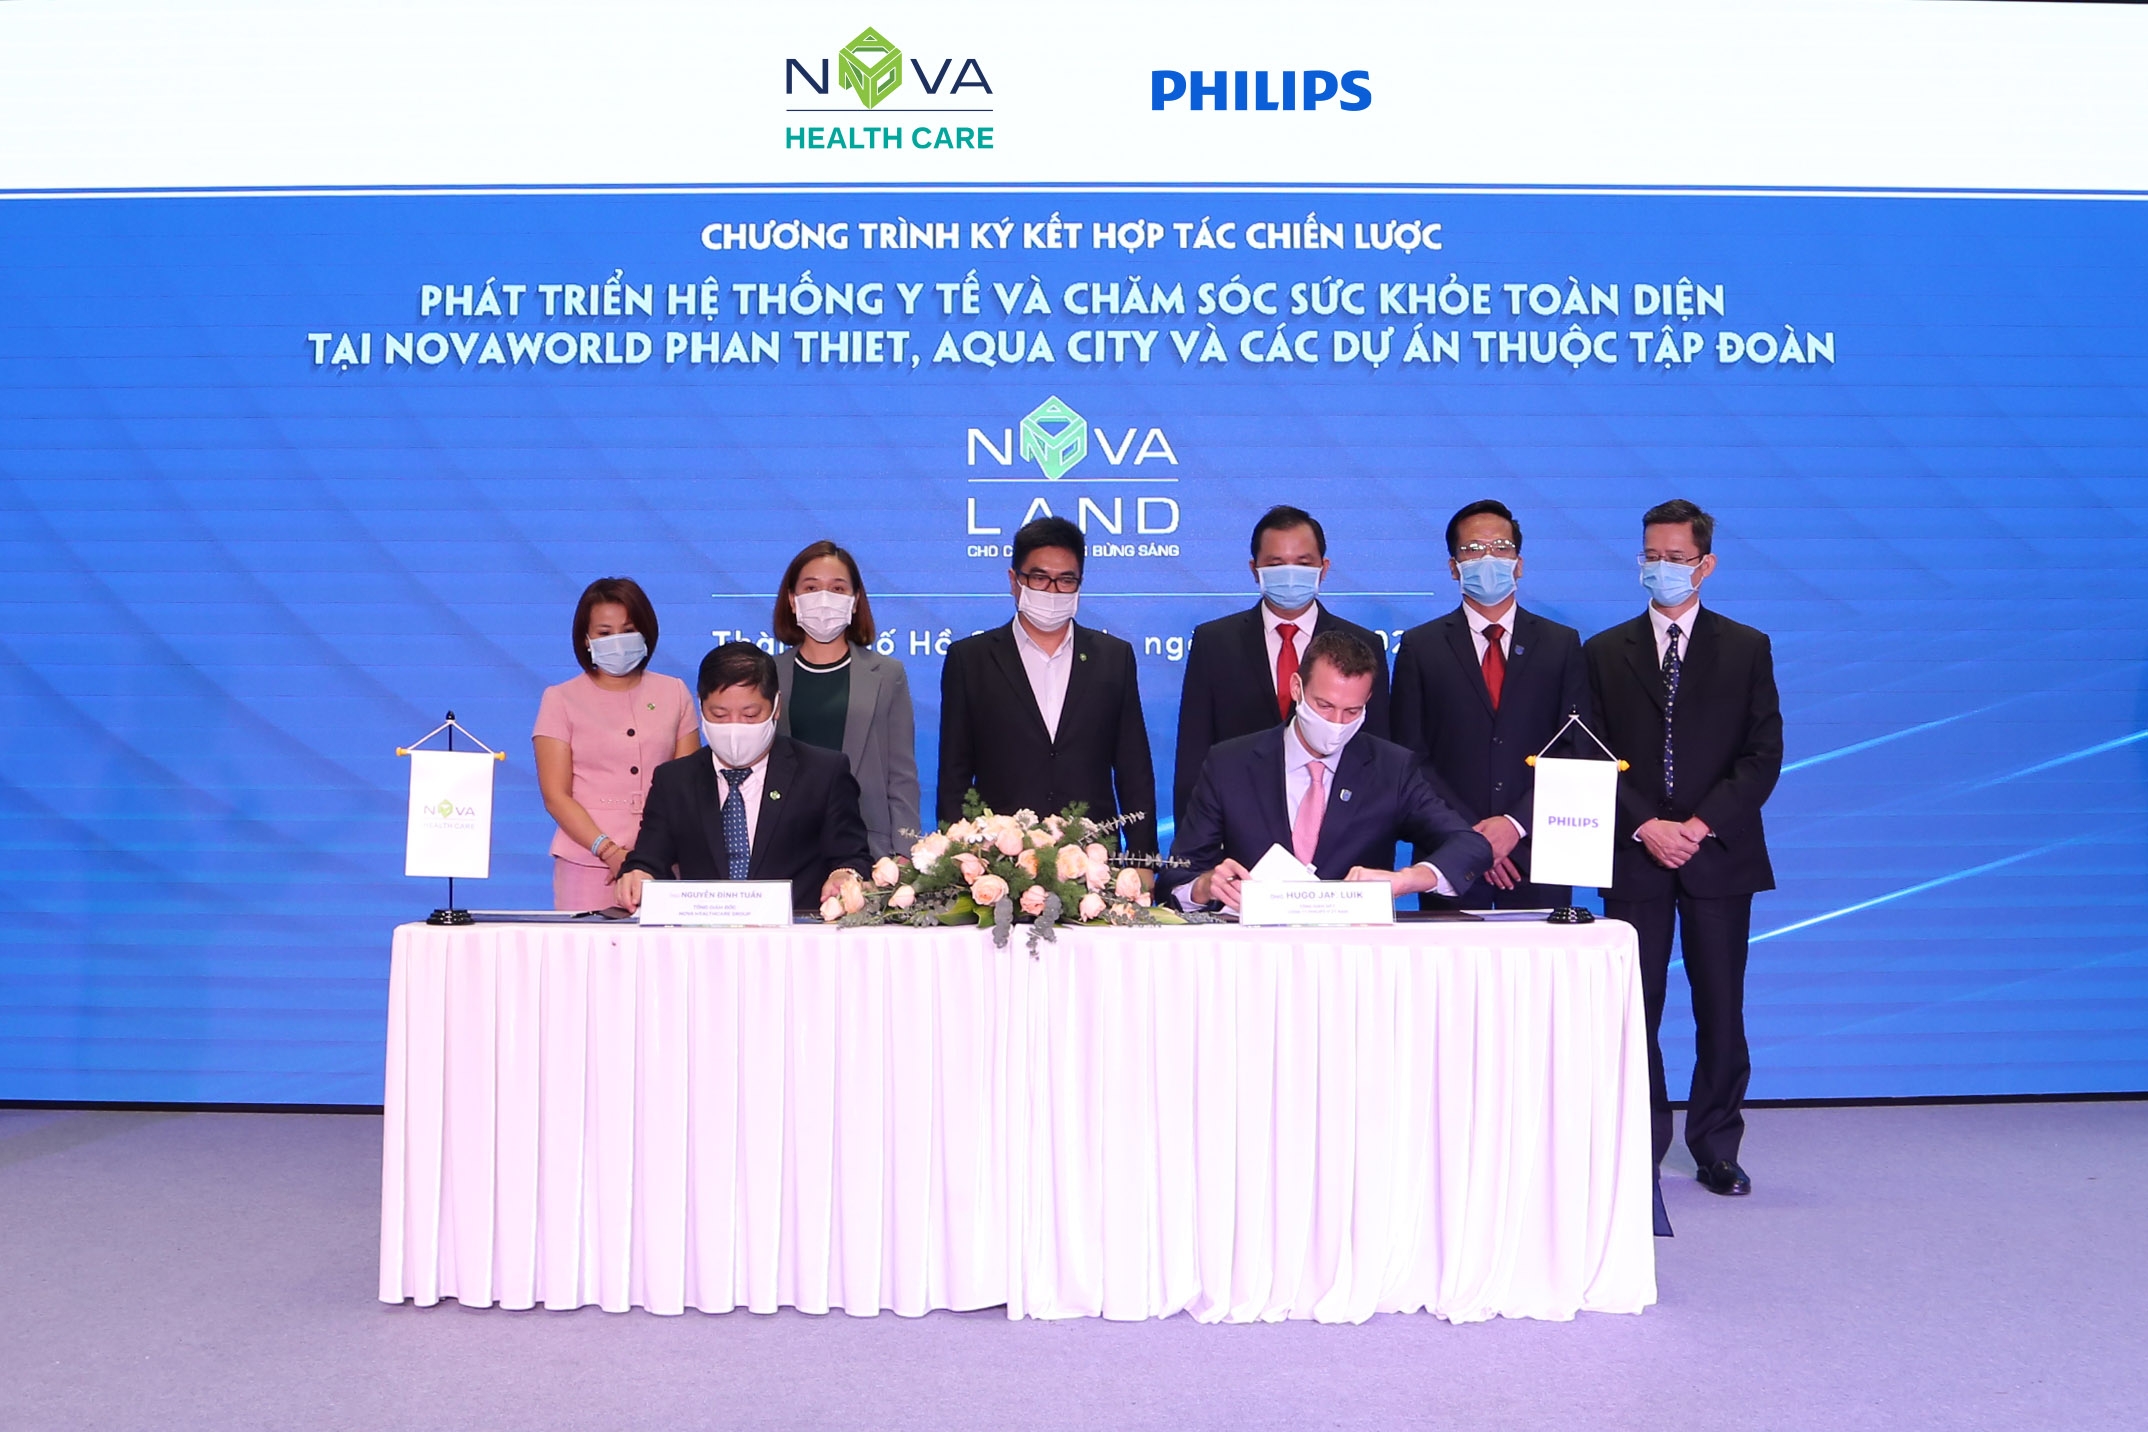 Đại diện NOVA HEALTHCARE và Philips trong sự kiện  ký kết hợp tác chiến lược